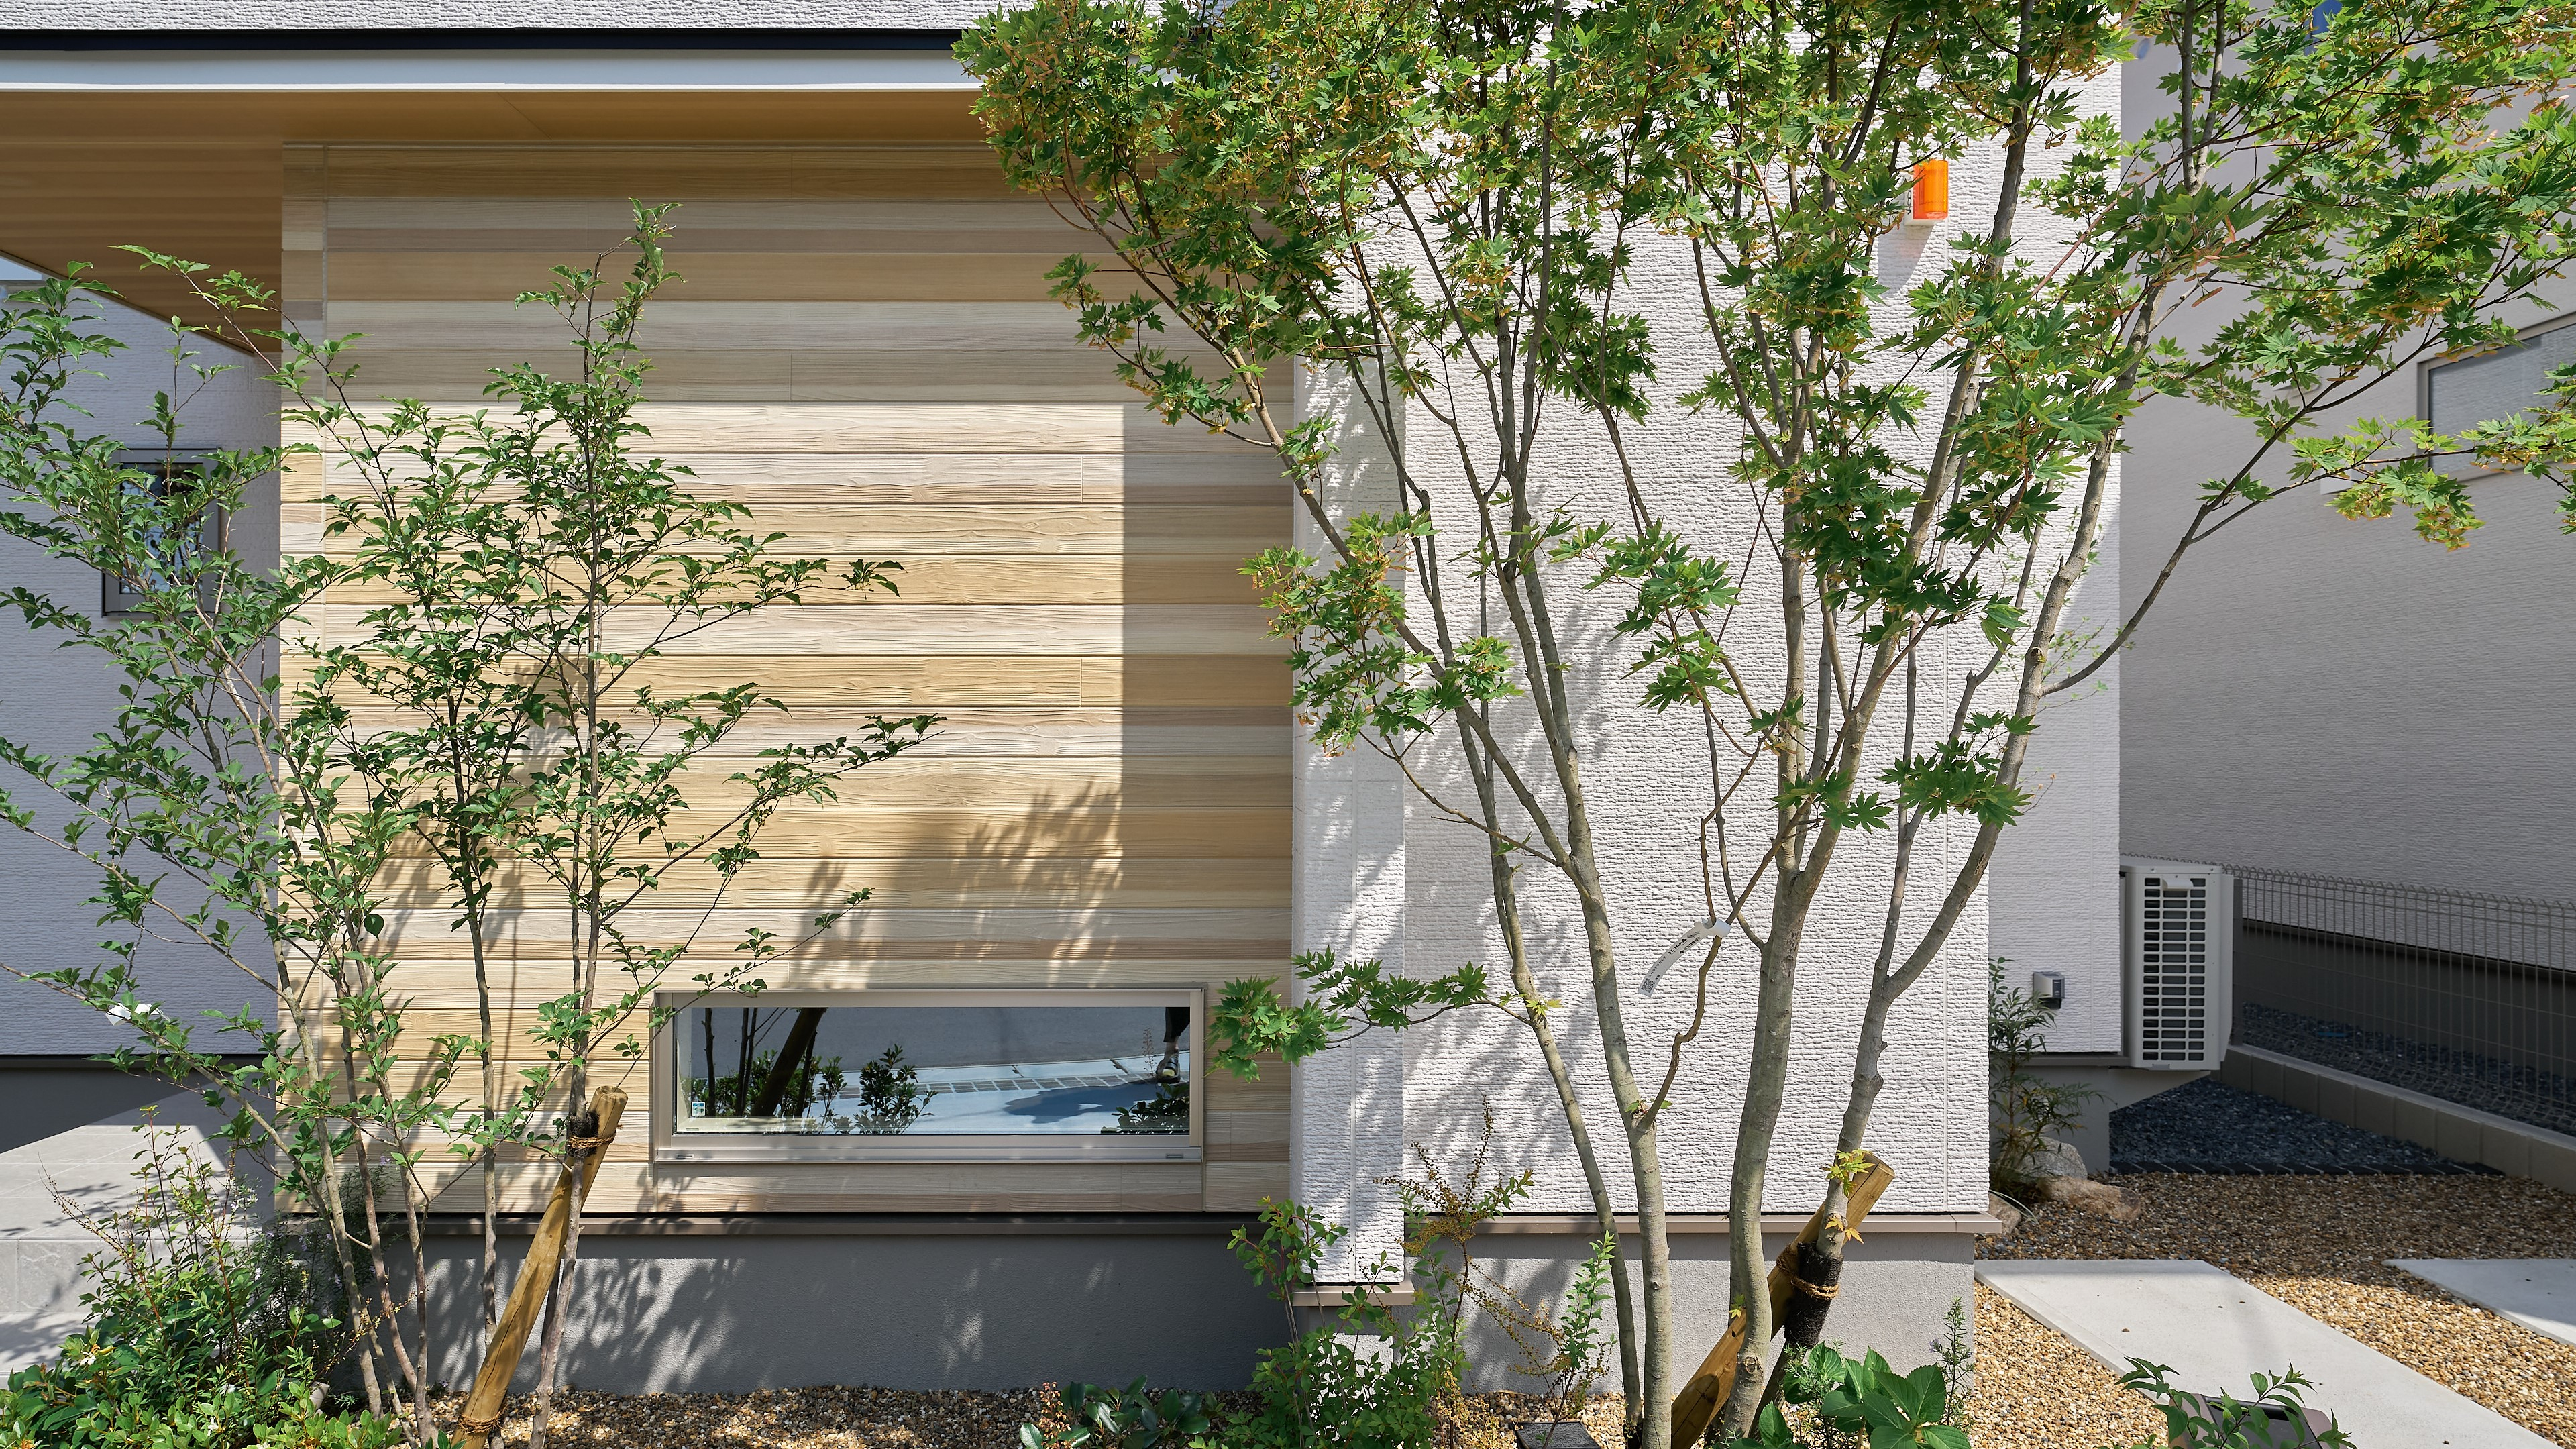 外壁には「ニチハ× 住友林業」による共同開発商品、木調サイディングの「レッドシダーウォール」を採用。
次世代技術によるリアルな木質感、木調軒天との一体感を演出します。